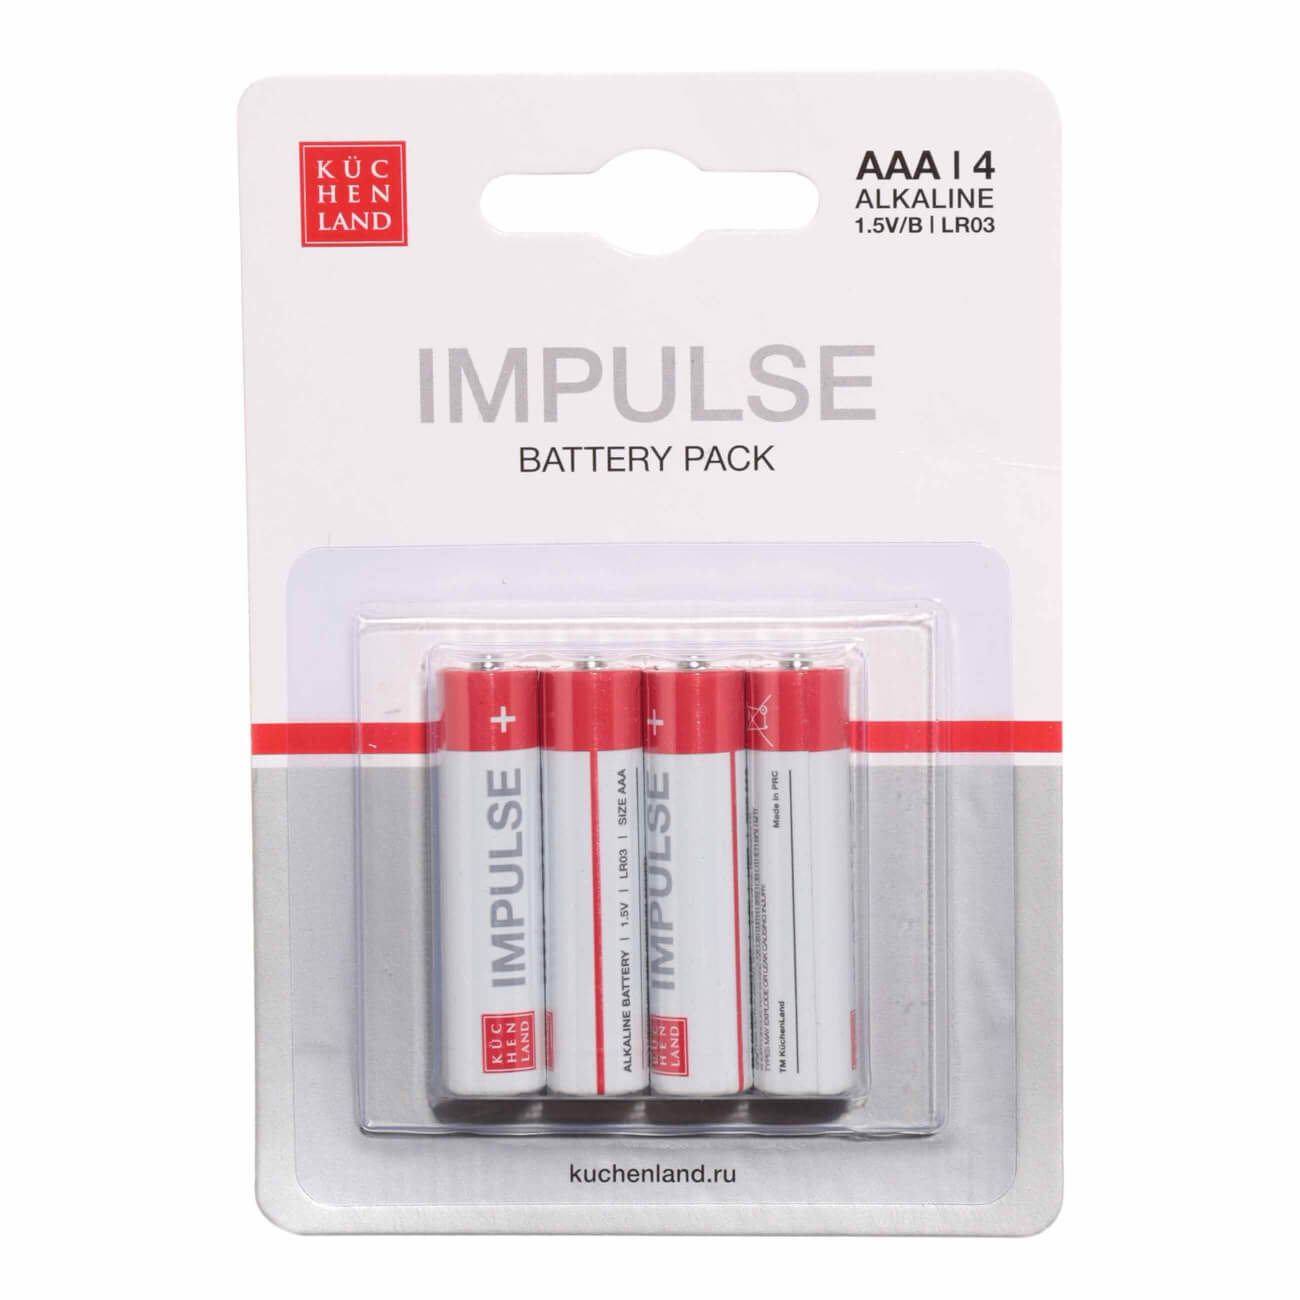 Батарейка AAA LR03, щелочная, 4 шт, Impulse батарейка aaa lr03 щелочная 4 шт impulse